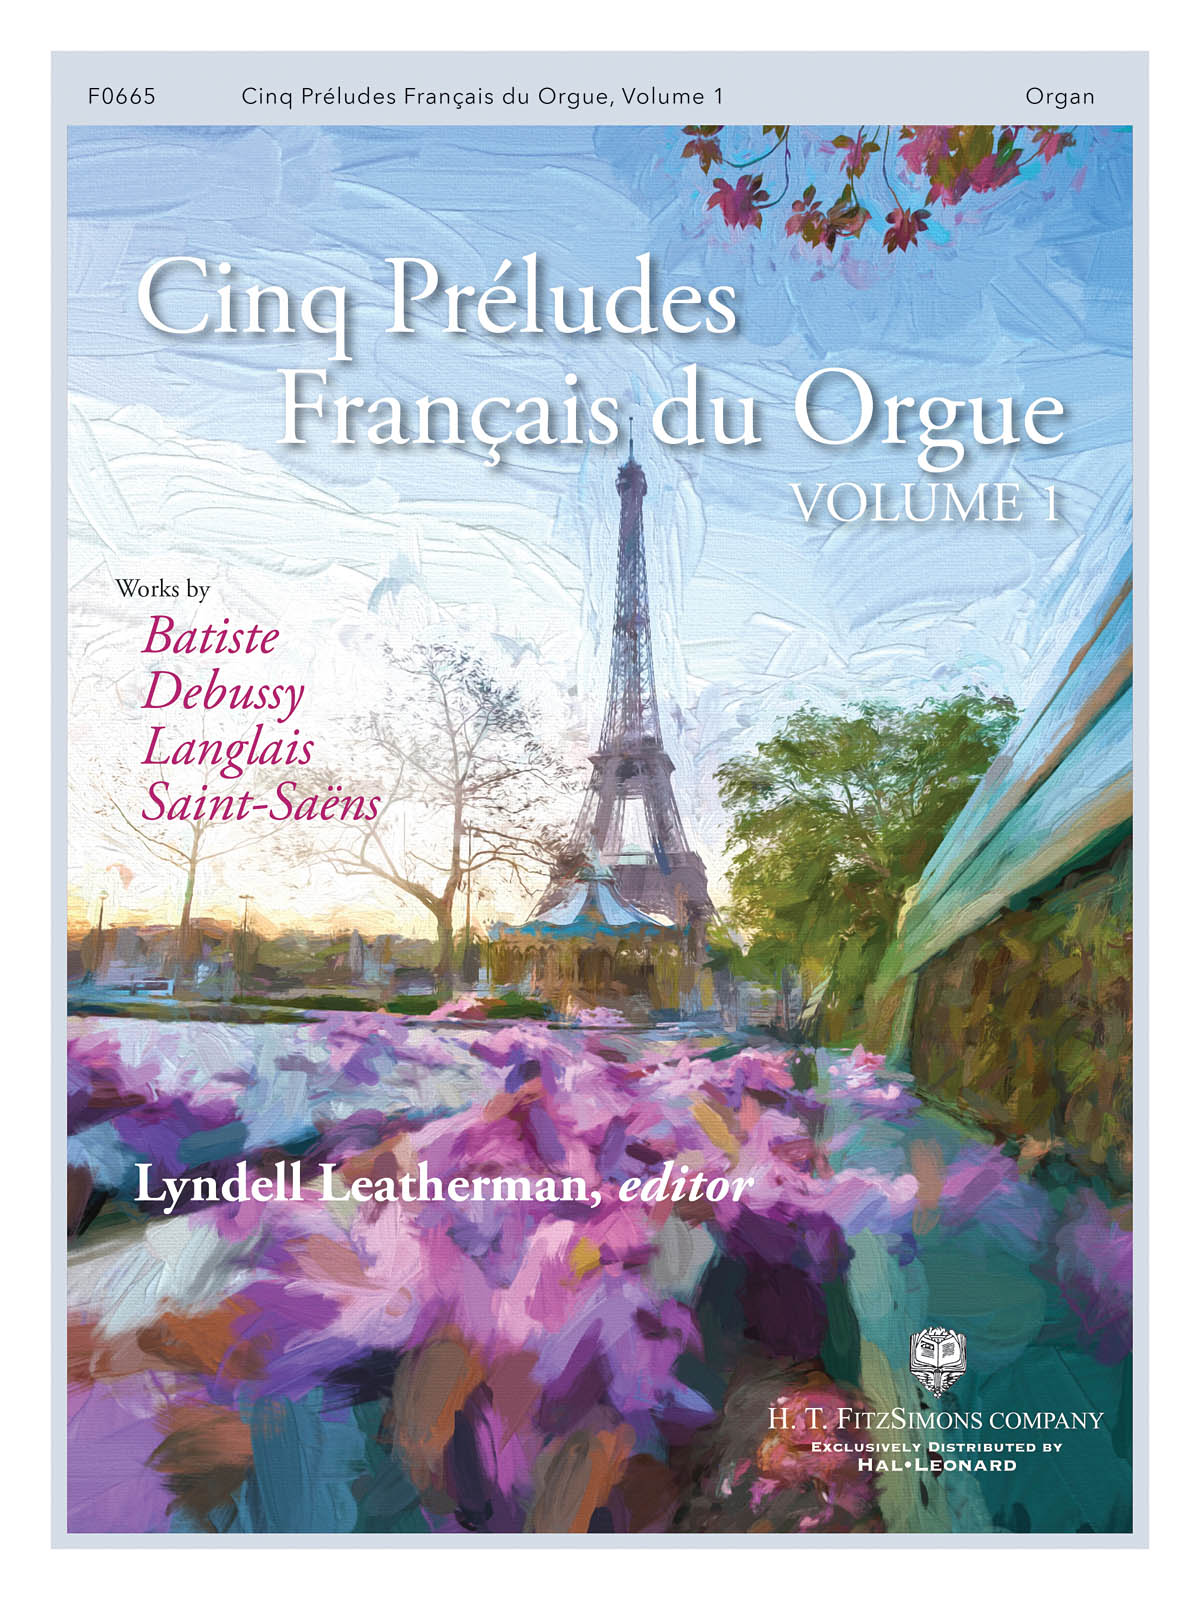 Cinq Preludes Francais pour Orgue: Organ